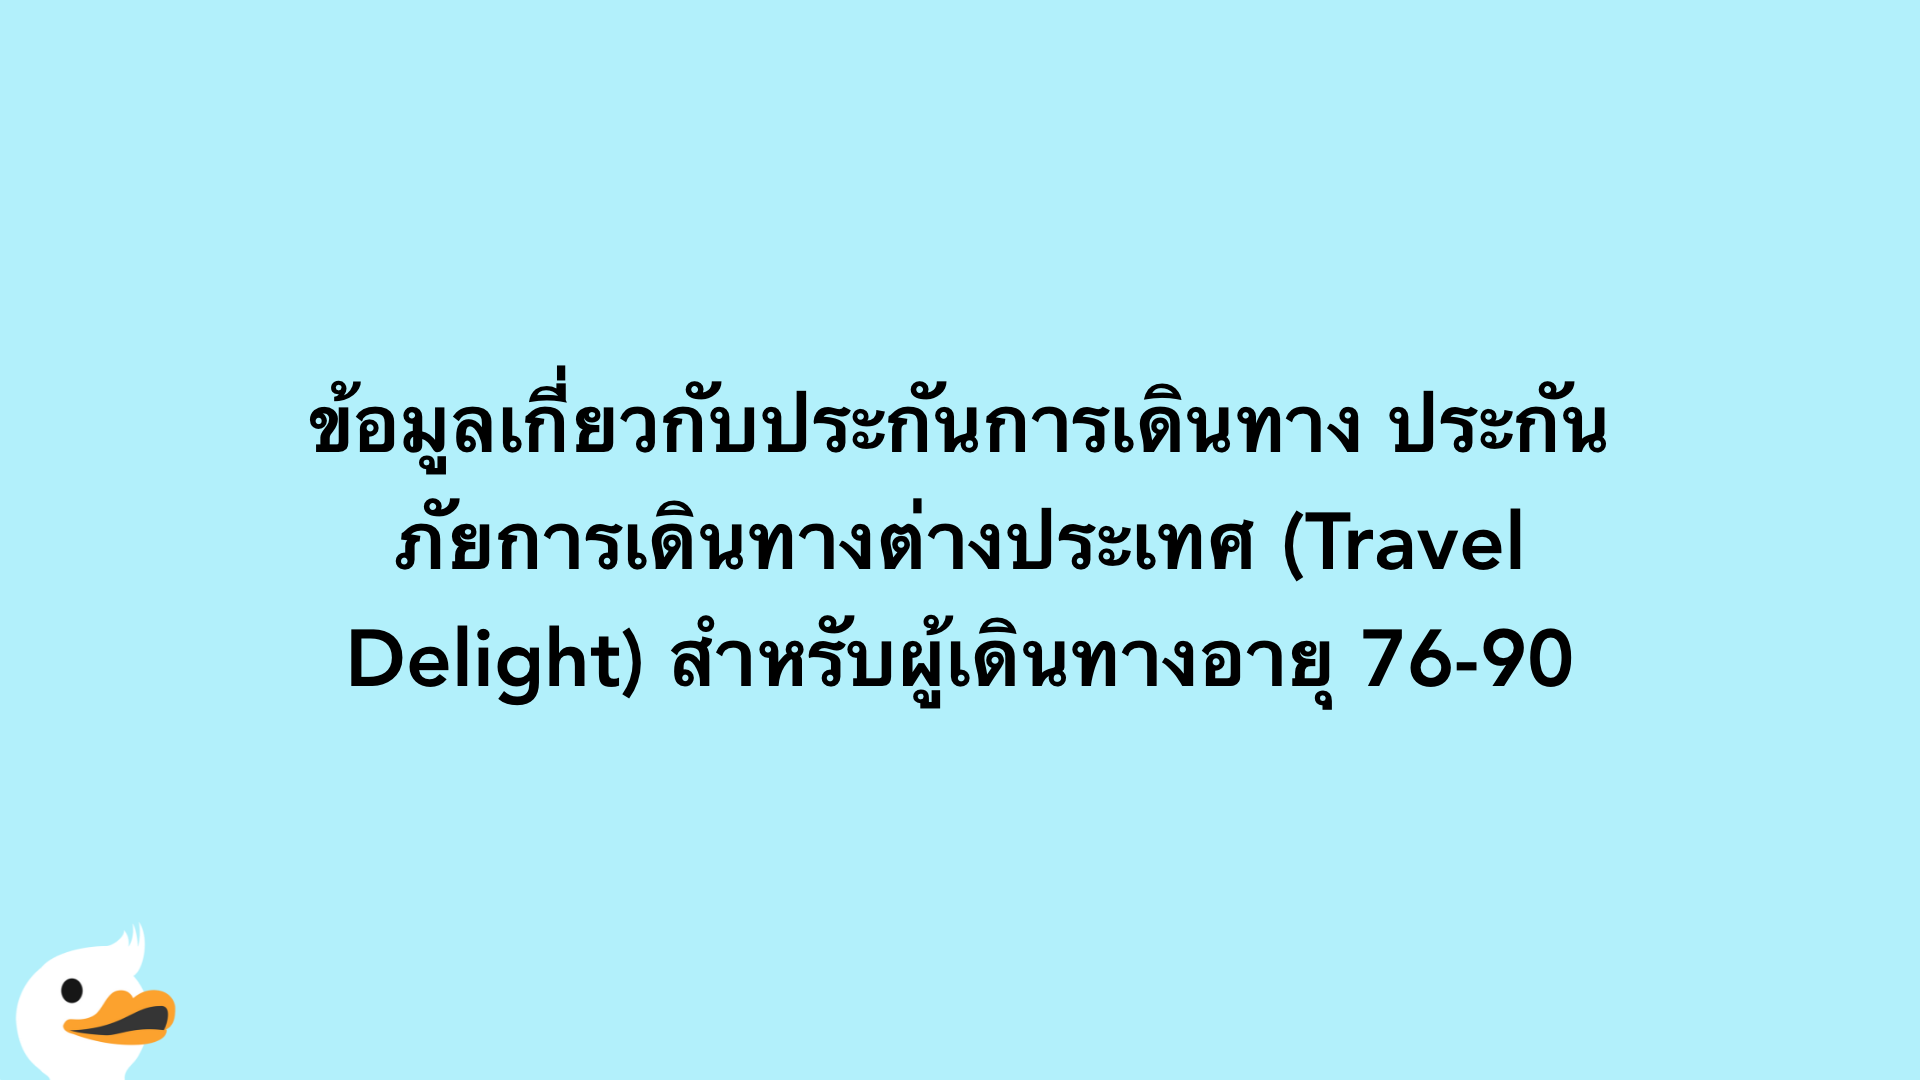 ข้อมูลเกี่ยวกับประกันการเดินทาง ประกันภัยการเดินทางต่างประเทศ (Travel Delight) สำหรับผู้เดินทางอายุ 76-90